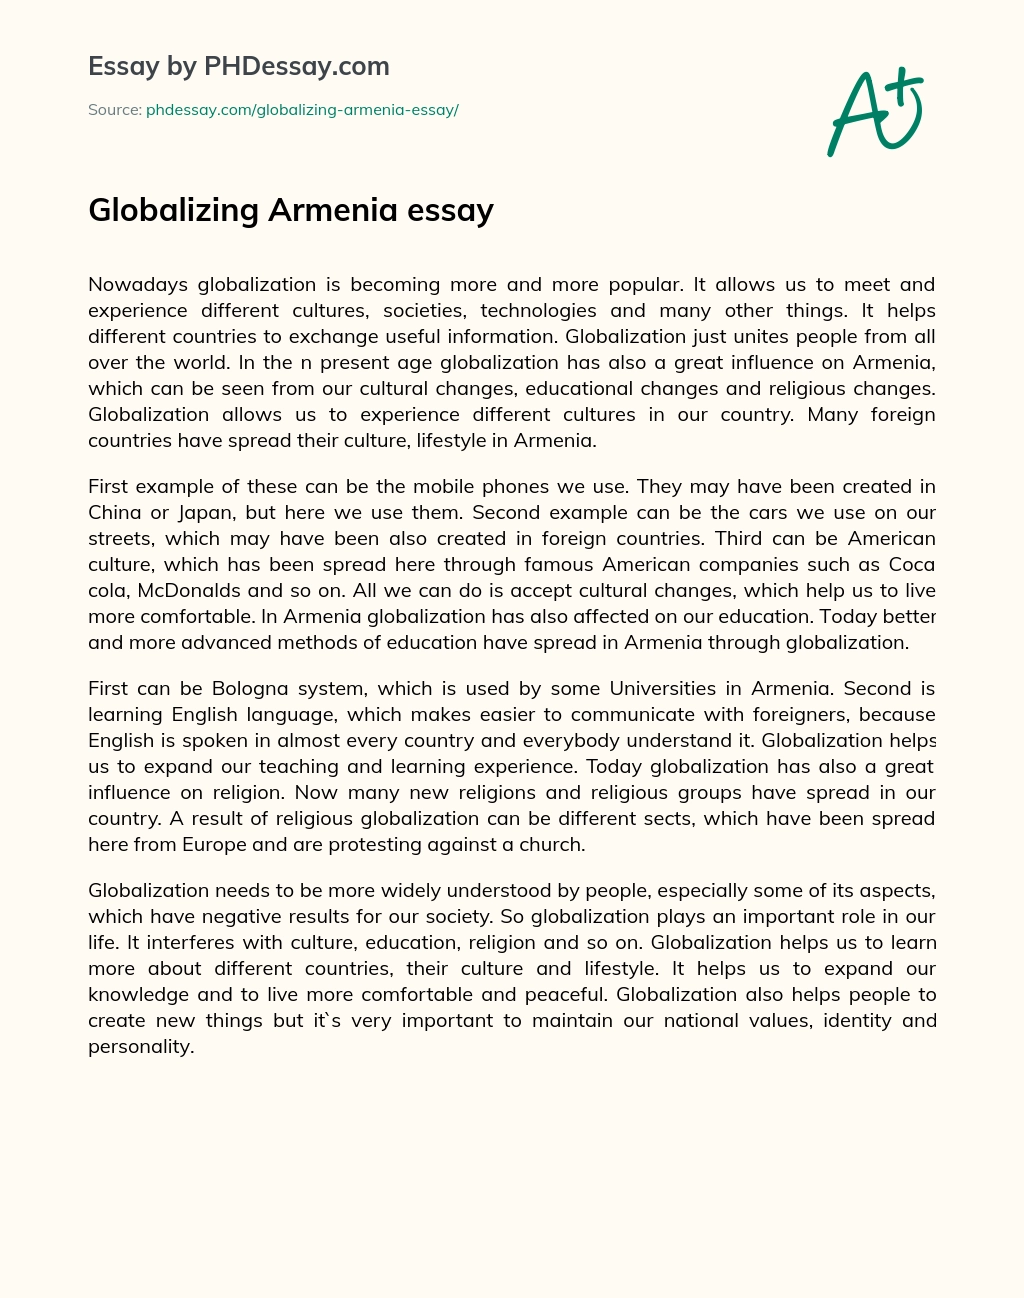 Globalizing Armenia essay essay